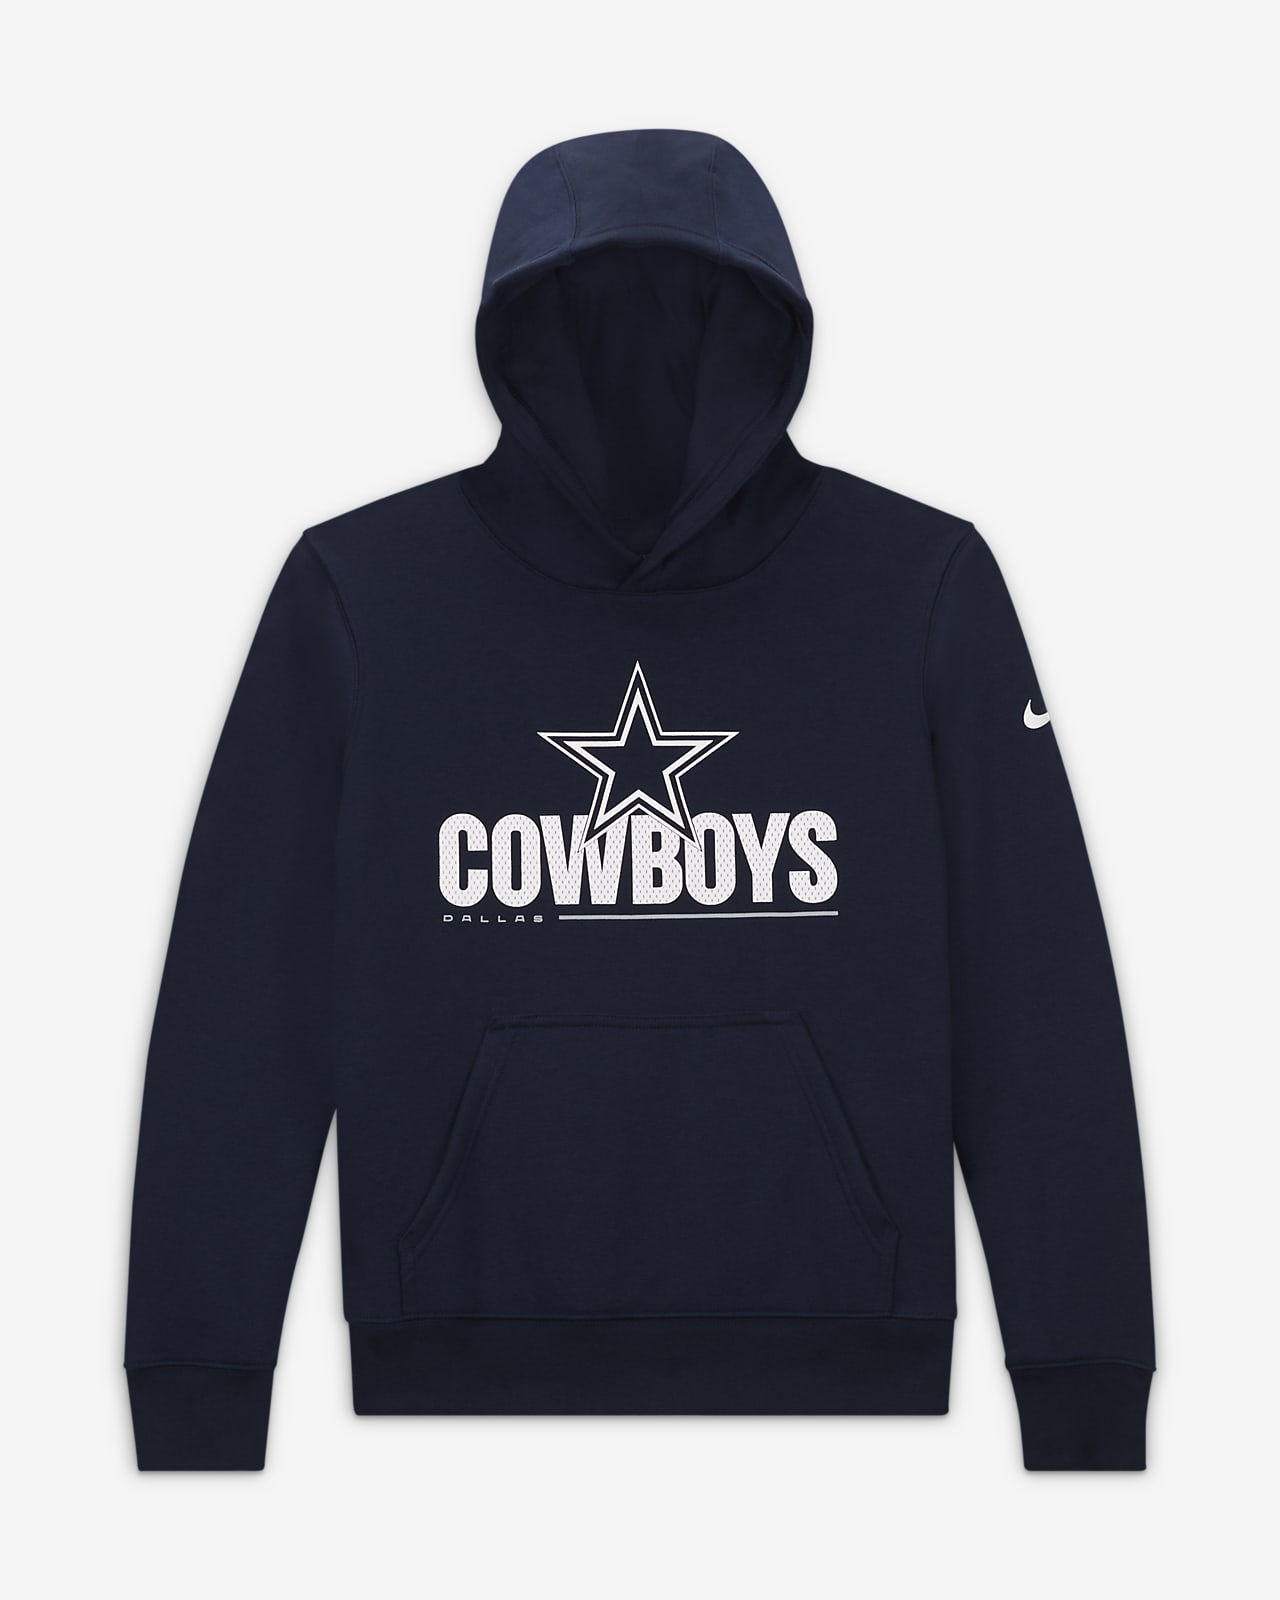 cowboys pullover sweatshirt